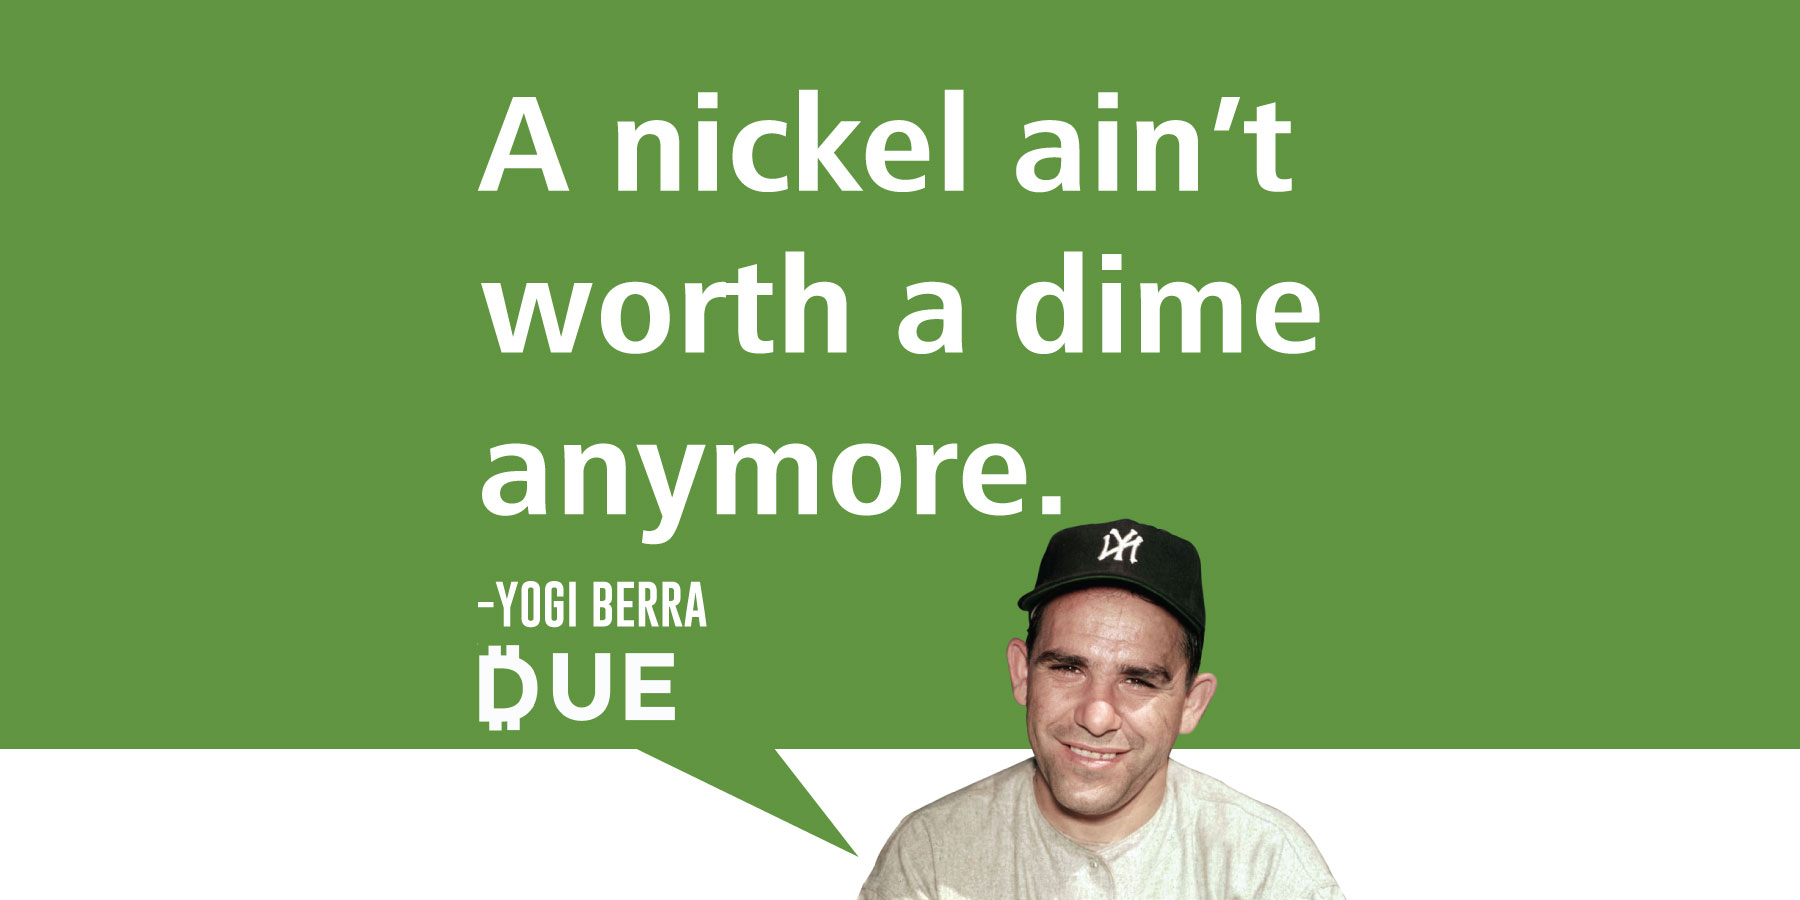 Yogi Berra - A Nickel Ain't Worth a Dime